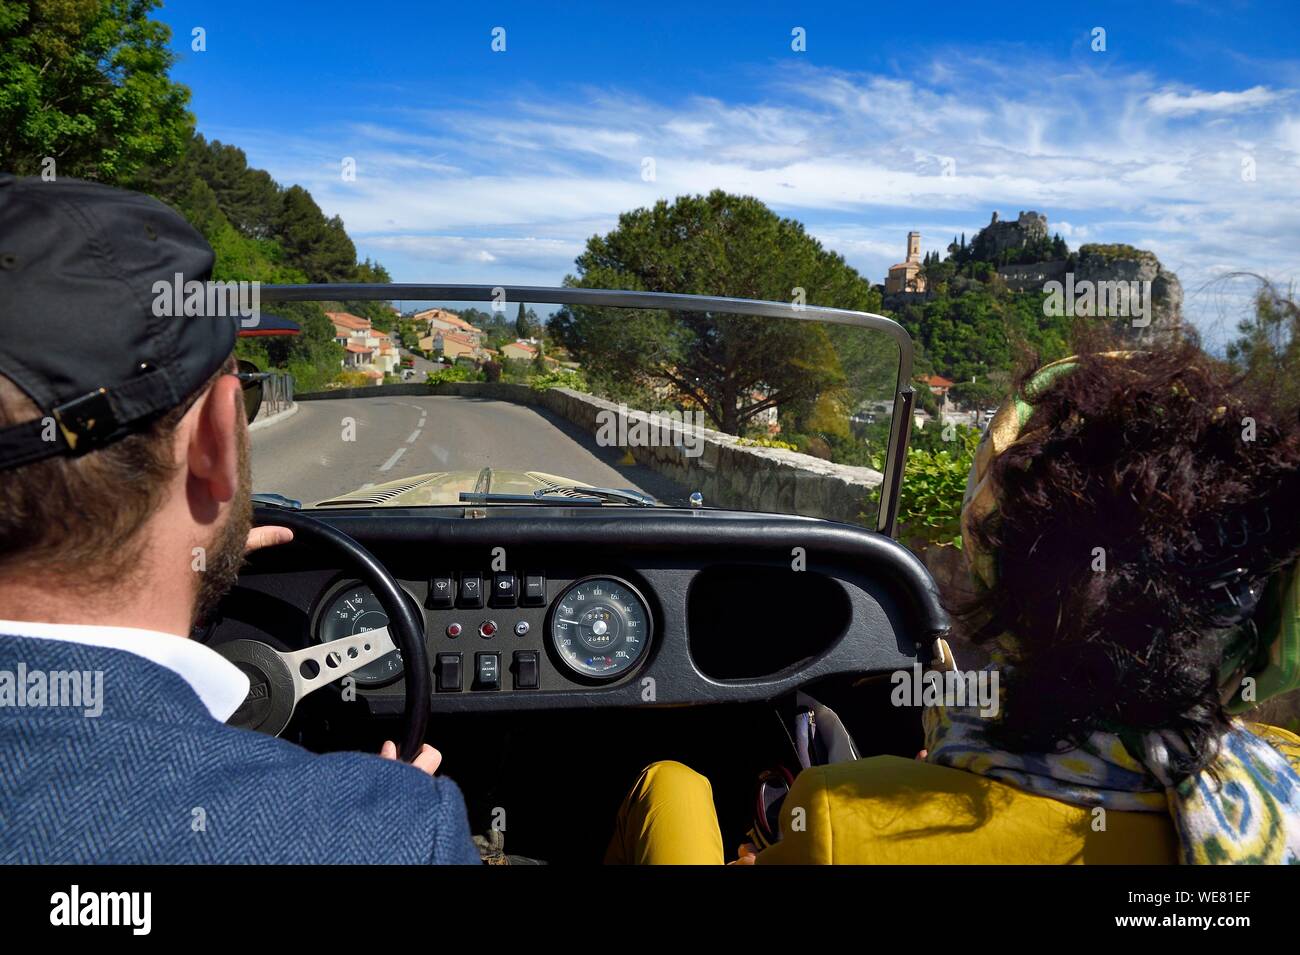 France, Alpes Maritimes, découverte de la côte dans une Morgan Roadster 4/4 vintage car, ici, sur une route qui mène à le village perché d'Eze Banque D'Images